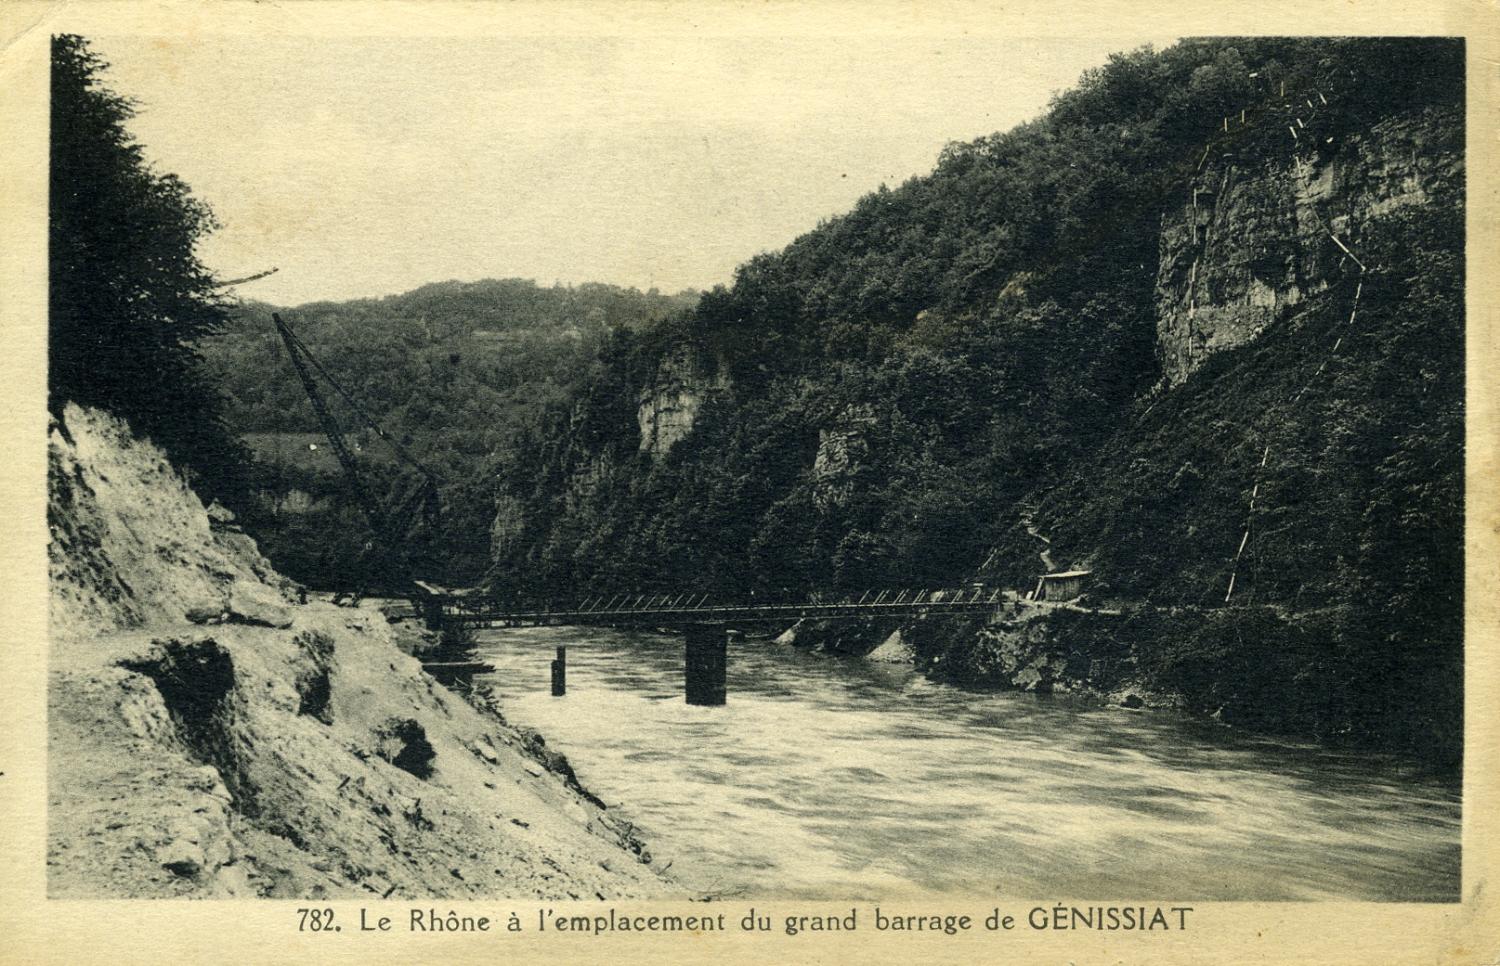 Le Rhône à l'emplacement du grand barrage de Génissiat.